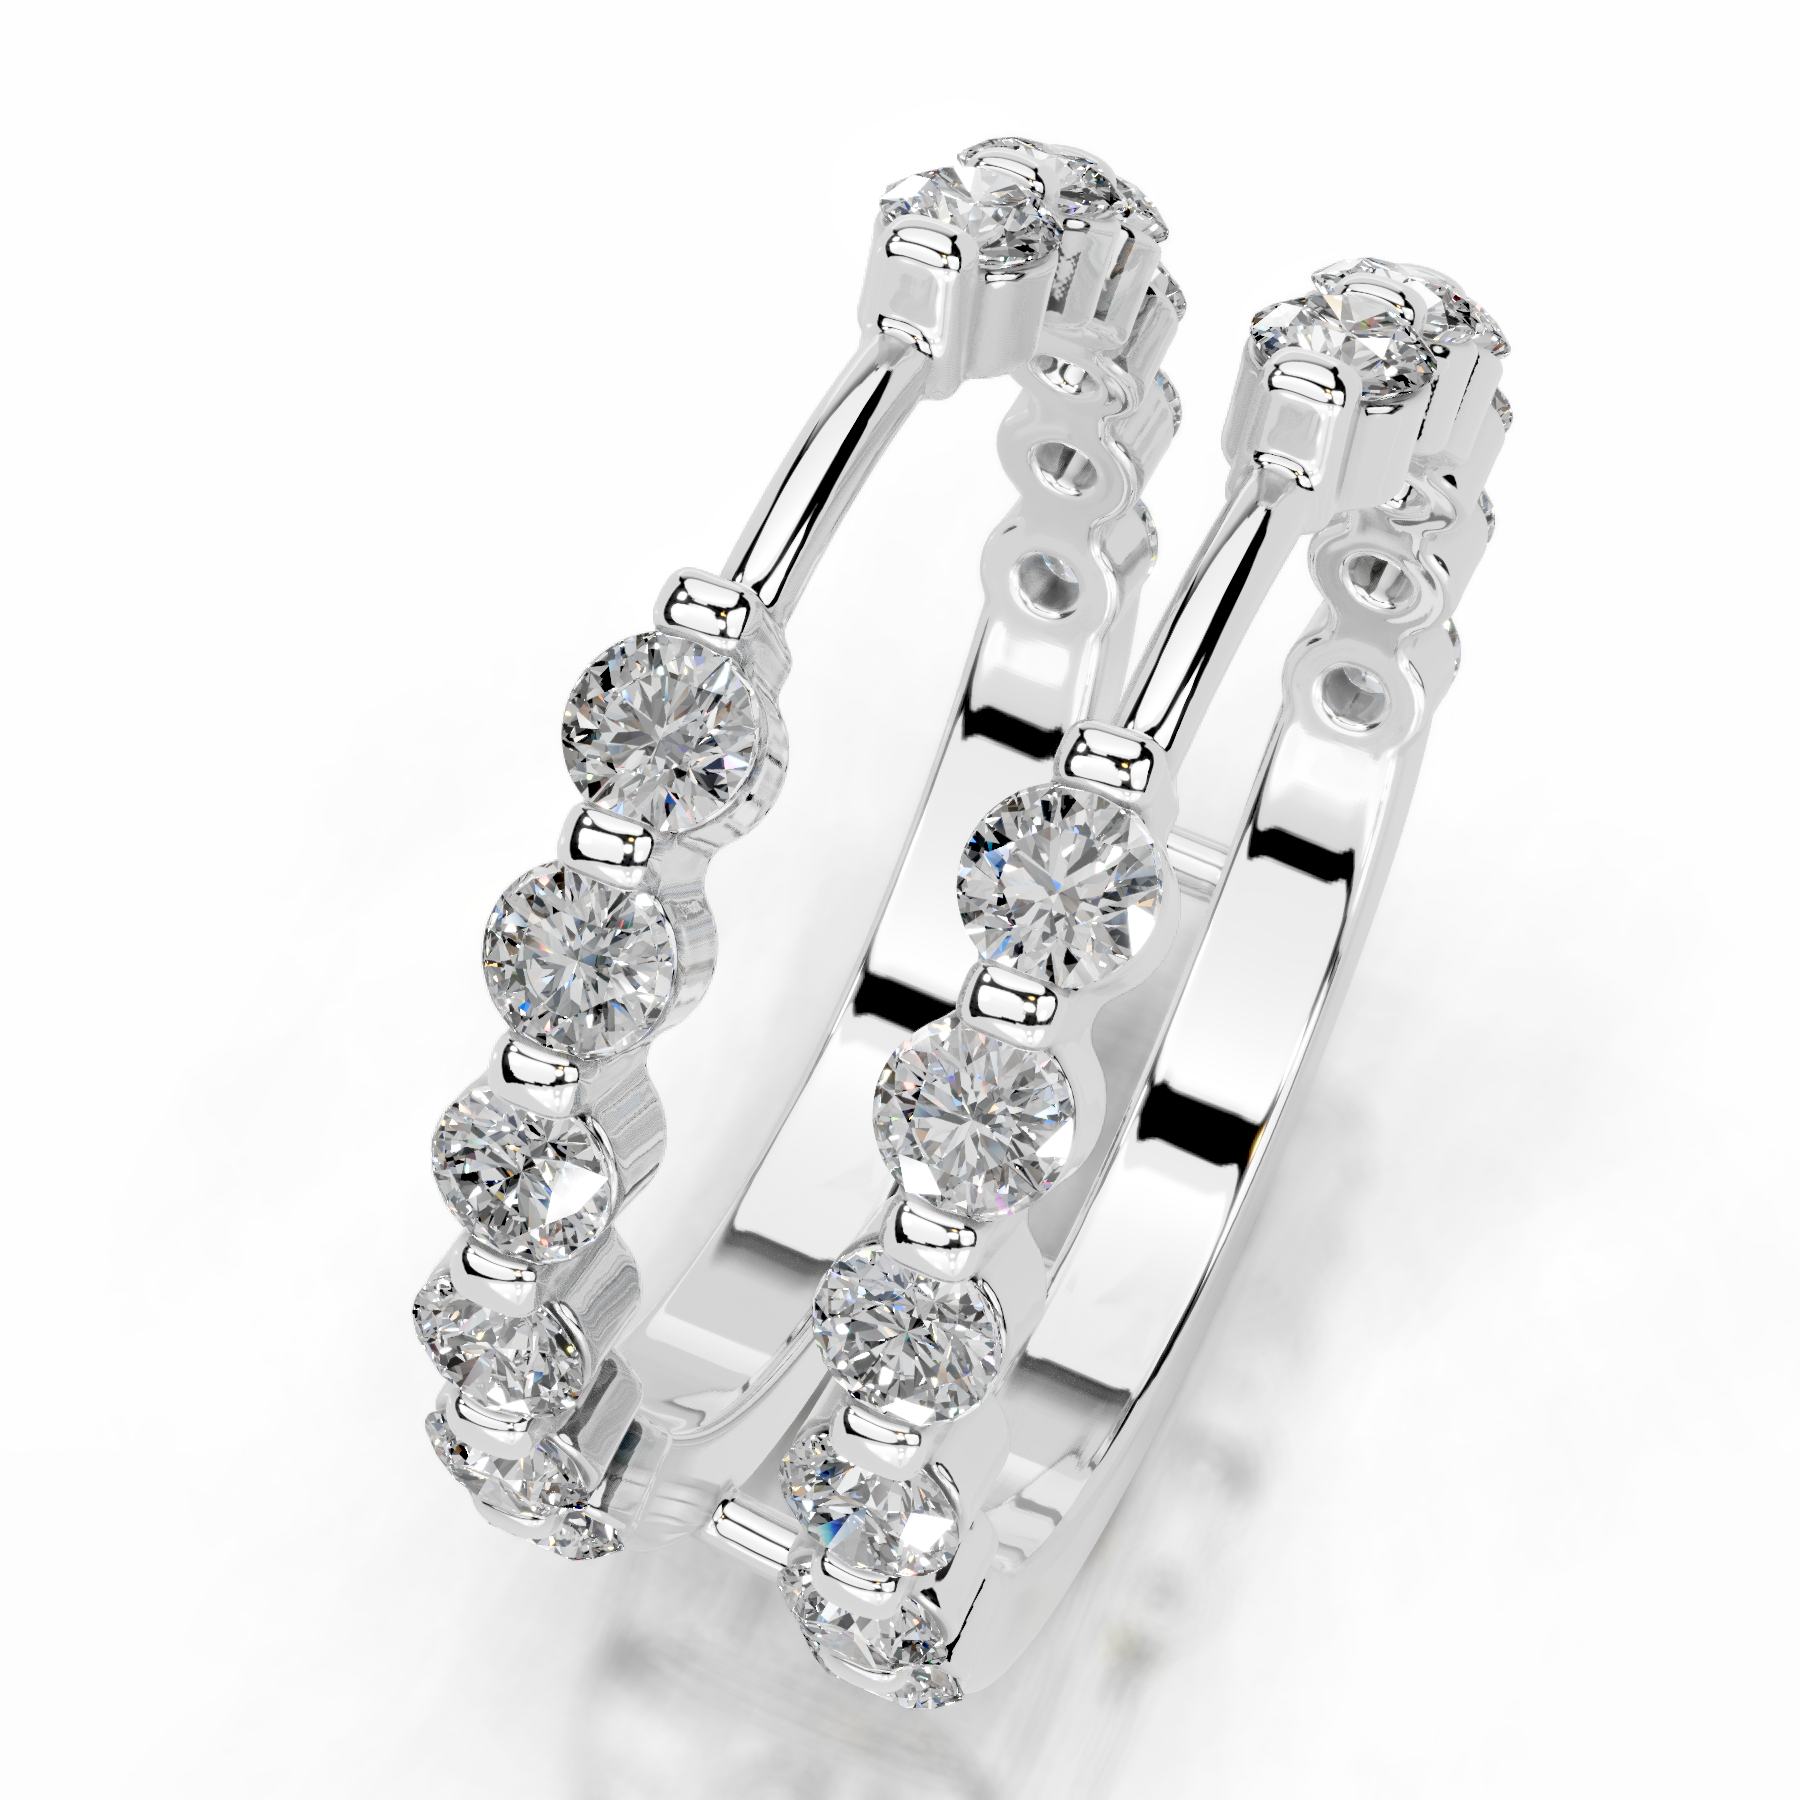 Ashley Diamond Wedding Ring   (1.25 Carat) -Platinum